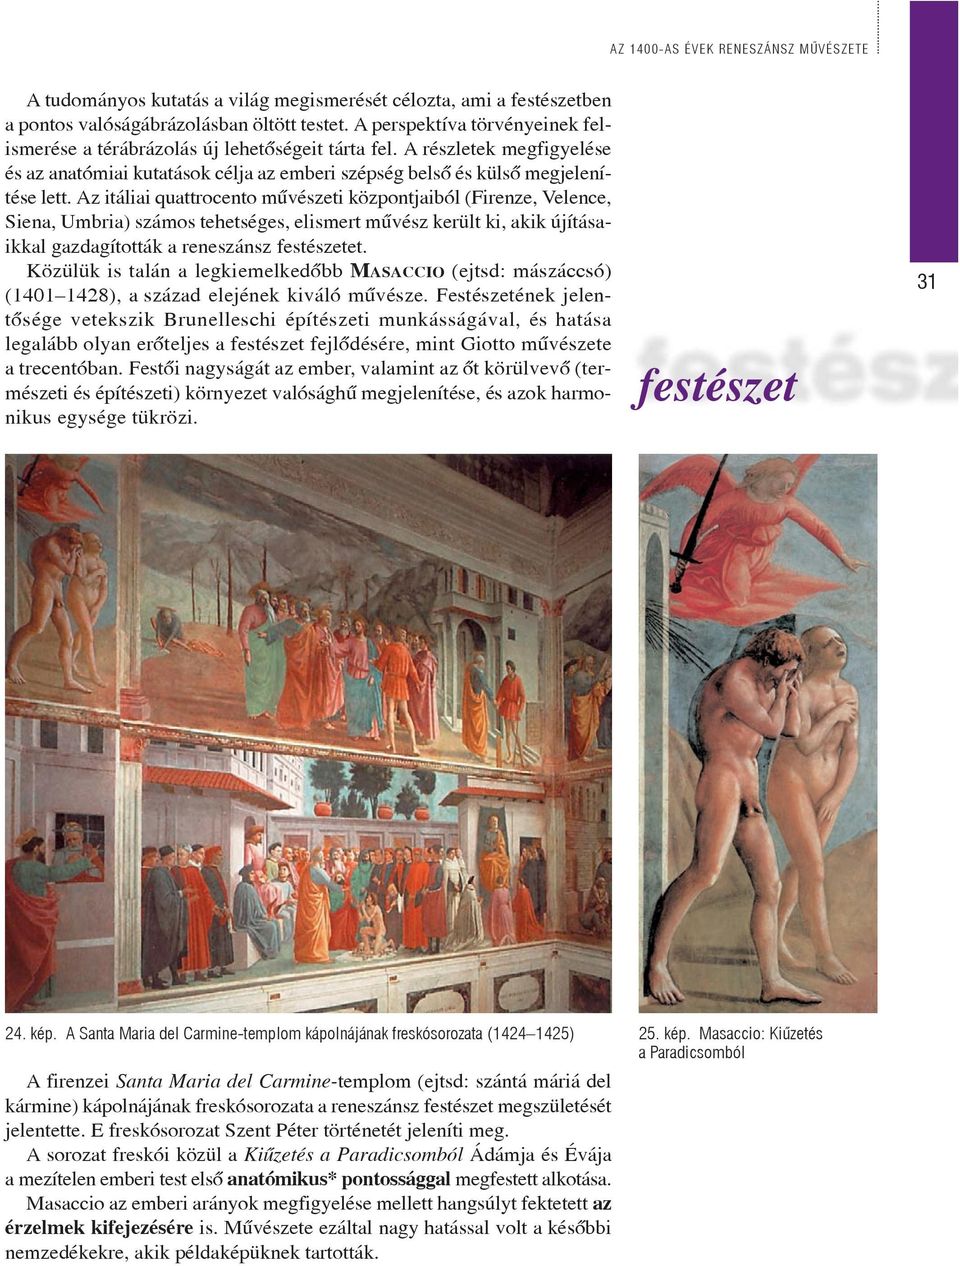 Az itáliai quattrocento mûvészeti központjaiból (Firenze, Velence, Siena, Umbria) számos tehetséges, elismert mûvész került ki, akik újításaikkal gazdagították a reneszánsz festészetet.